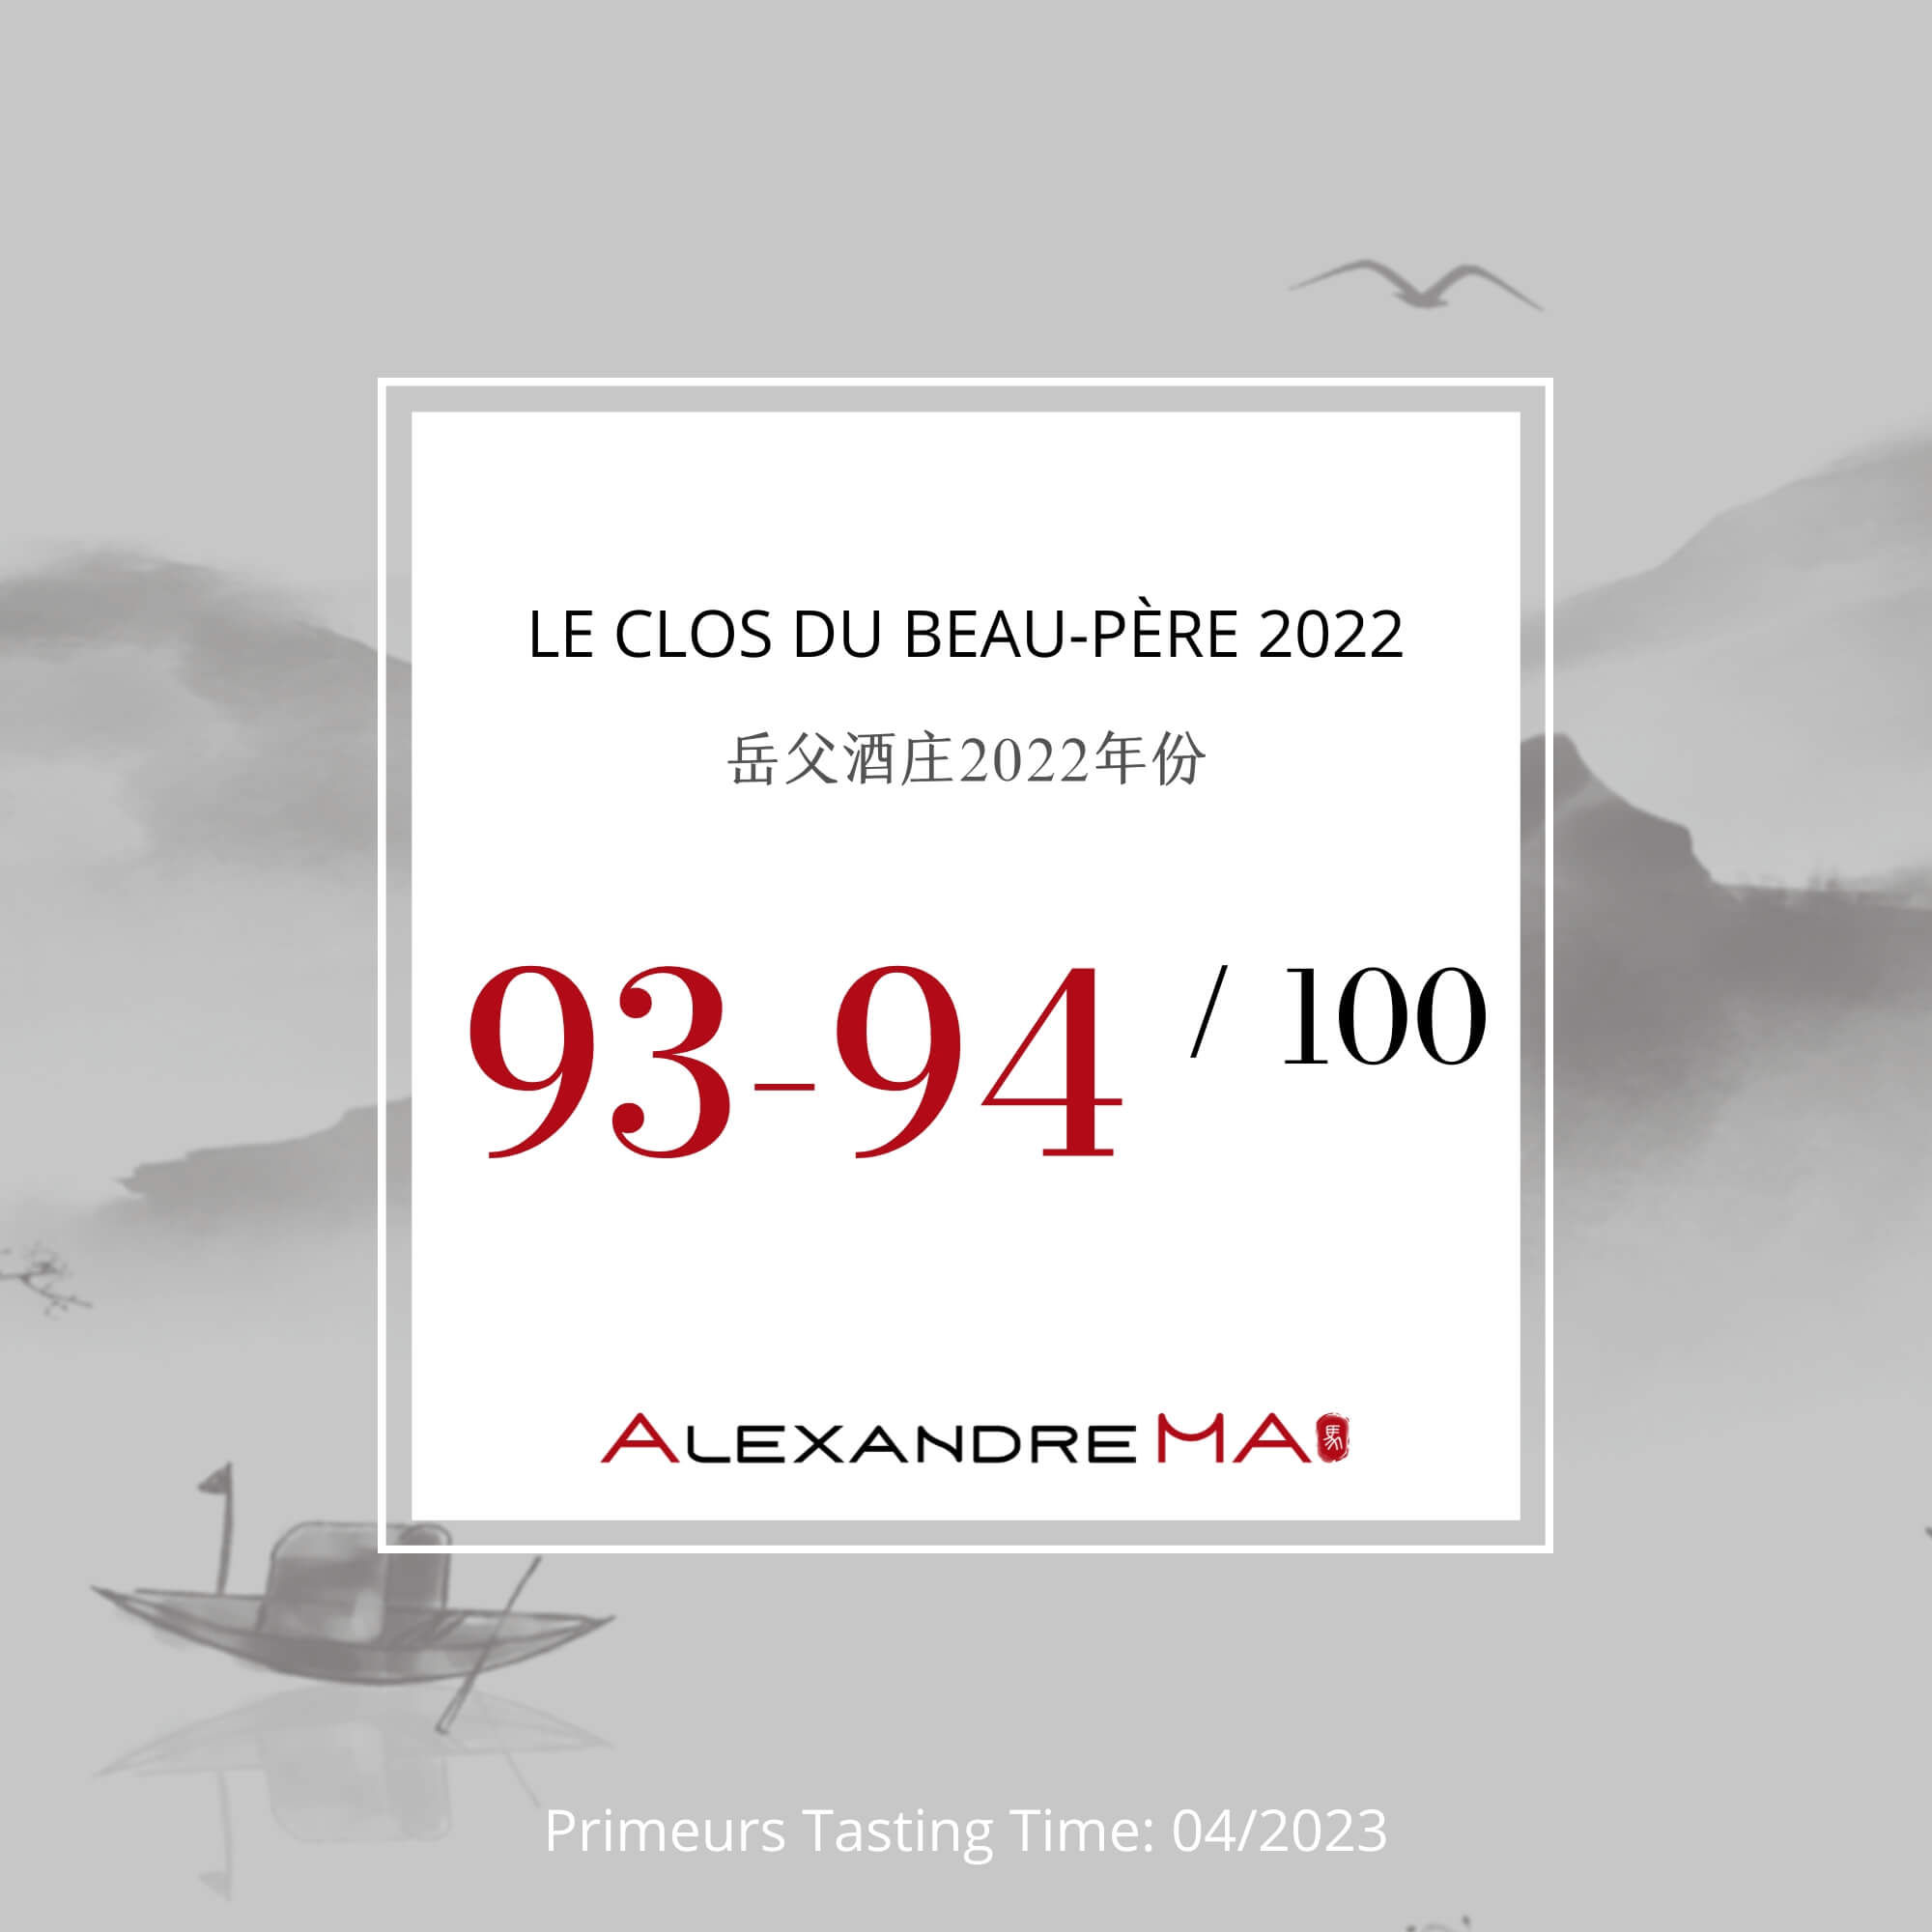 Le Clos du Beau-Père 2022 Primeurs 岳父酒庄 - Alexandre Ma